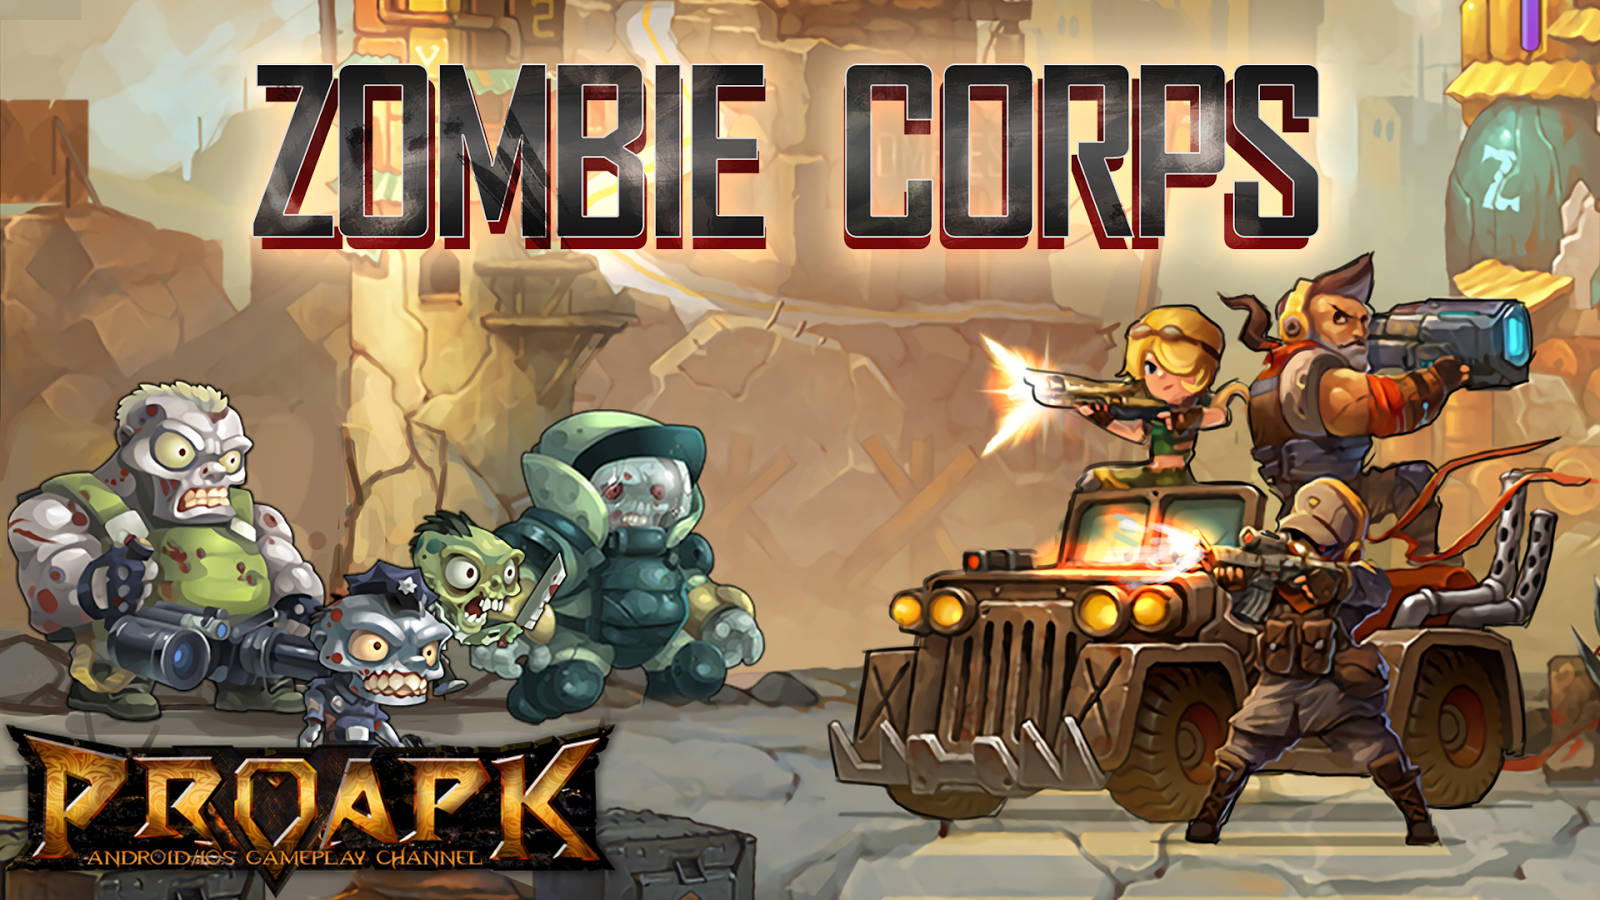 Zombie Corps